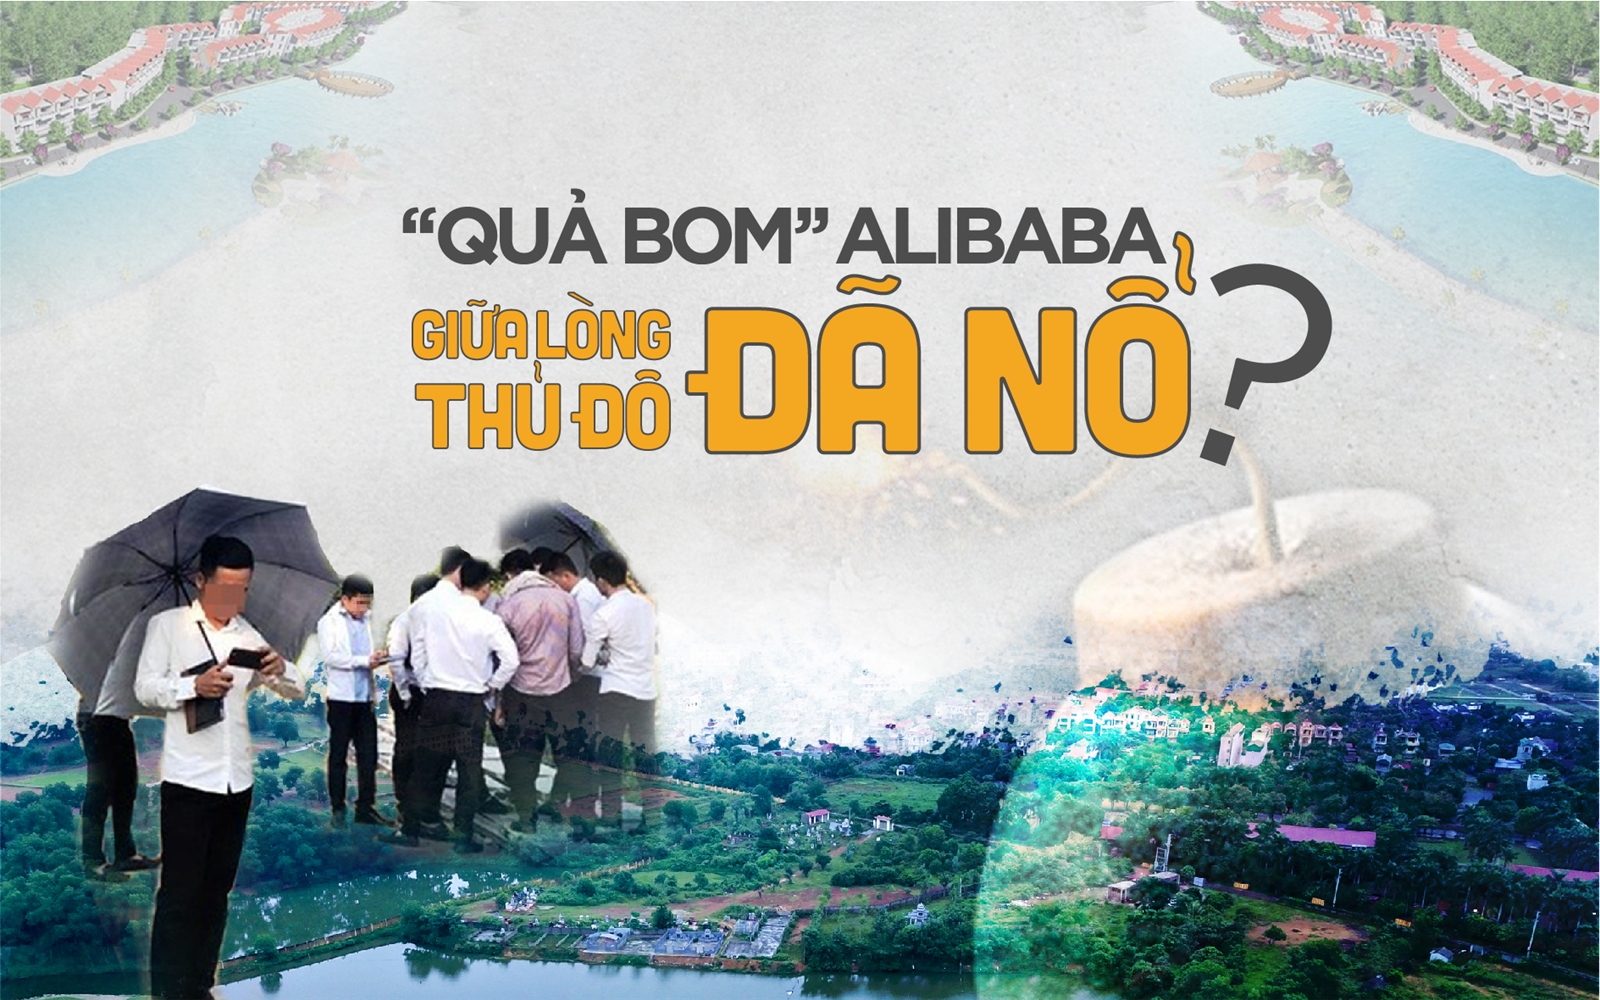 “Quả bom” Alibaba giữa lòng Thủ đô đã nổ?